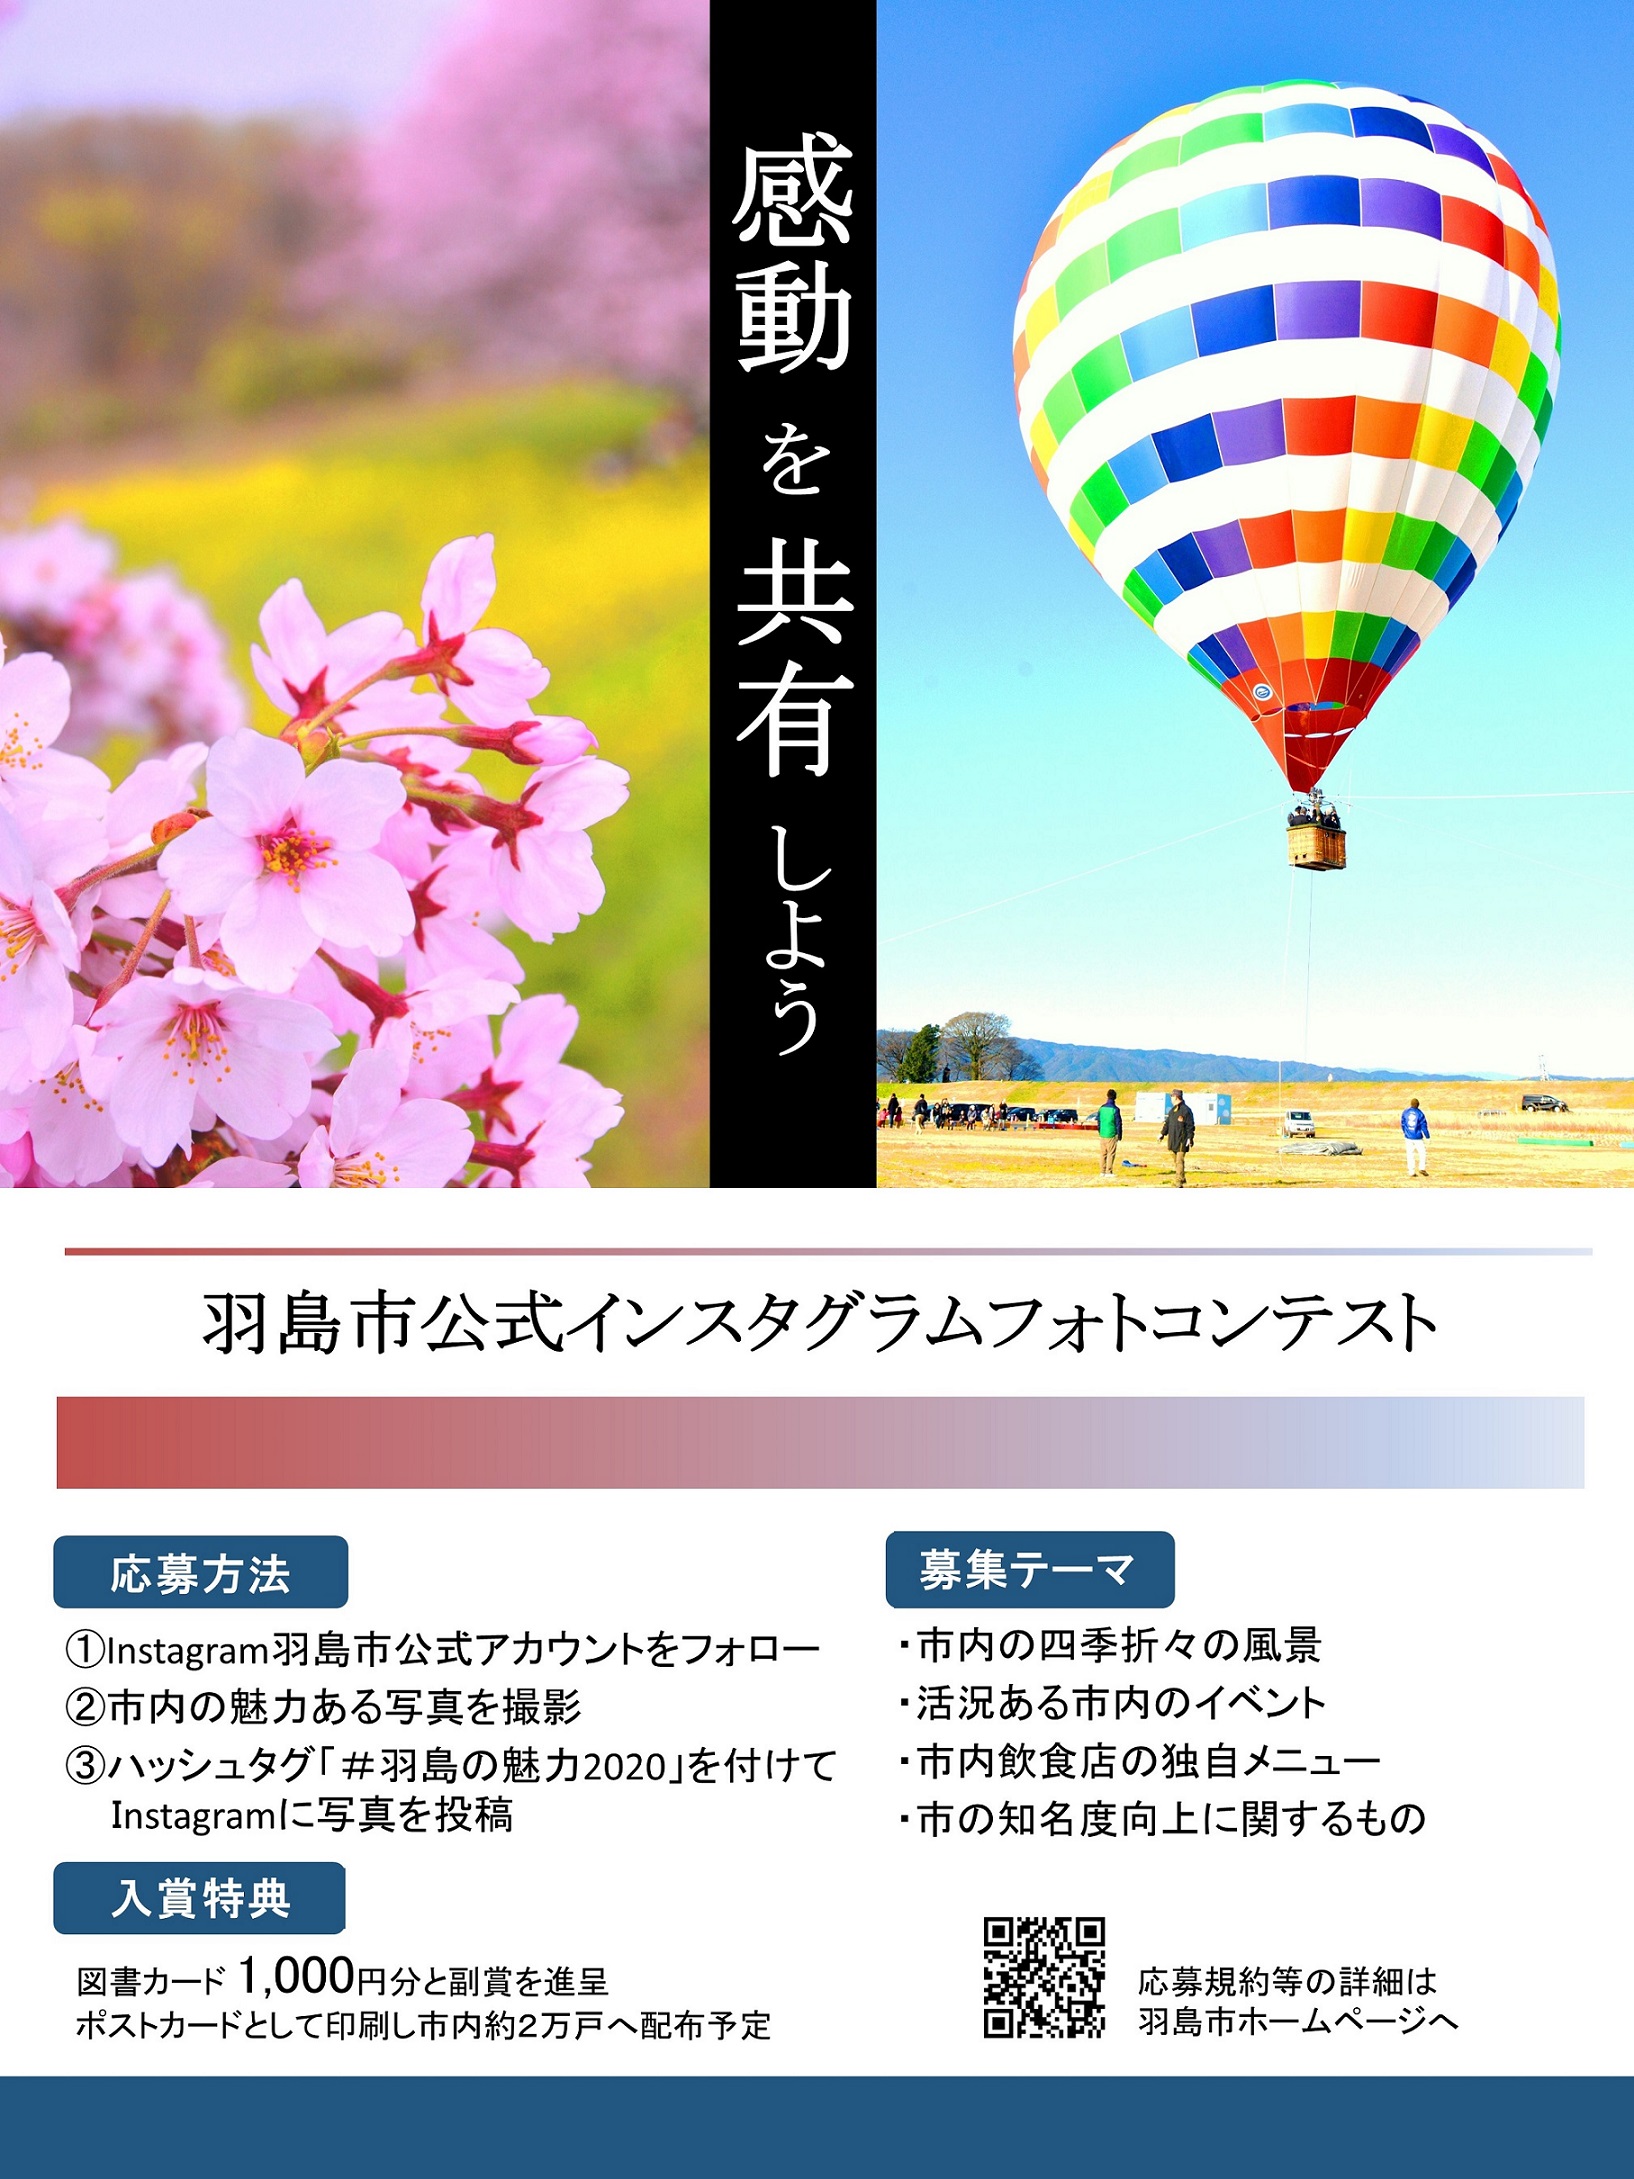 羽島市公式インスタグラムフォトコンテストで４点の市長賞、14点の優秀賞を選定